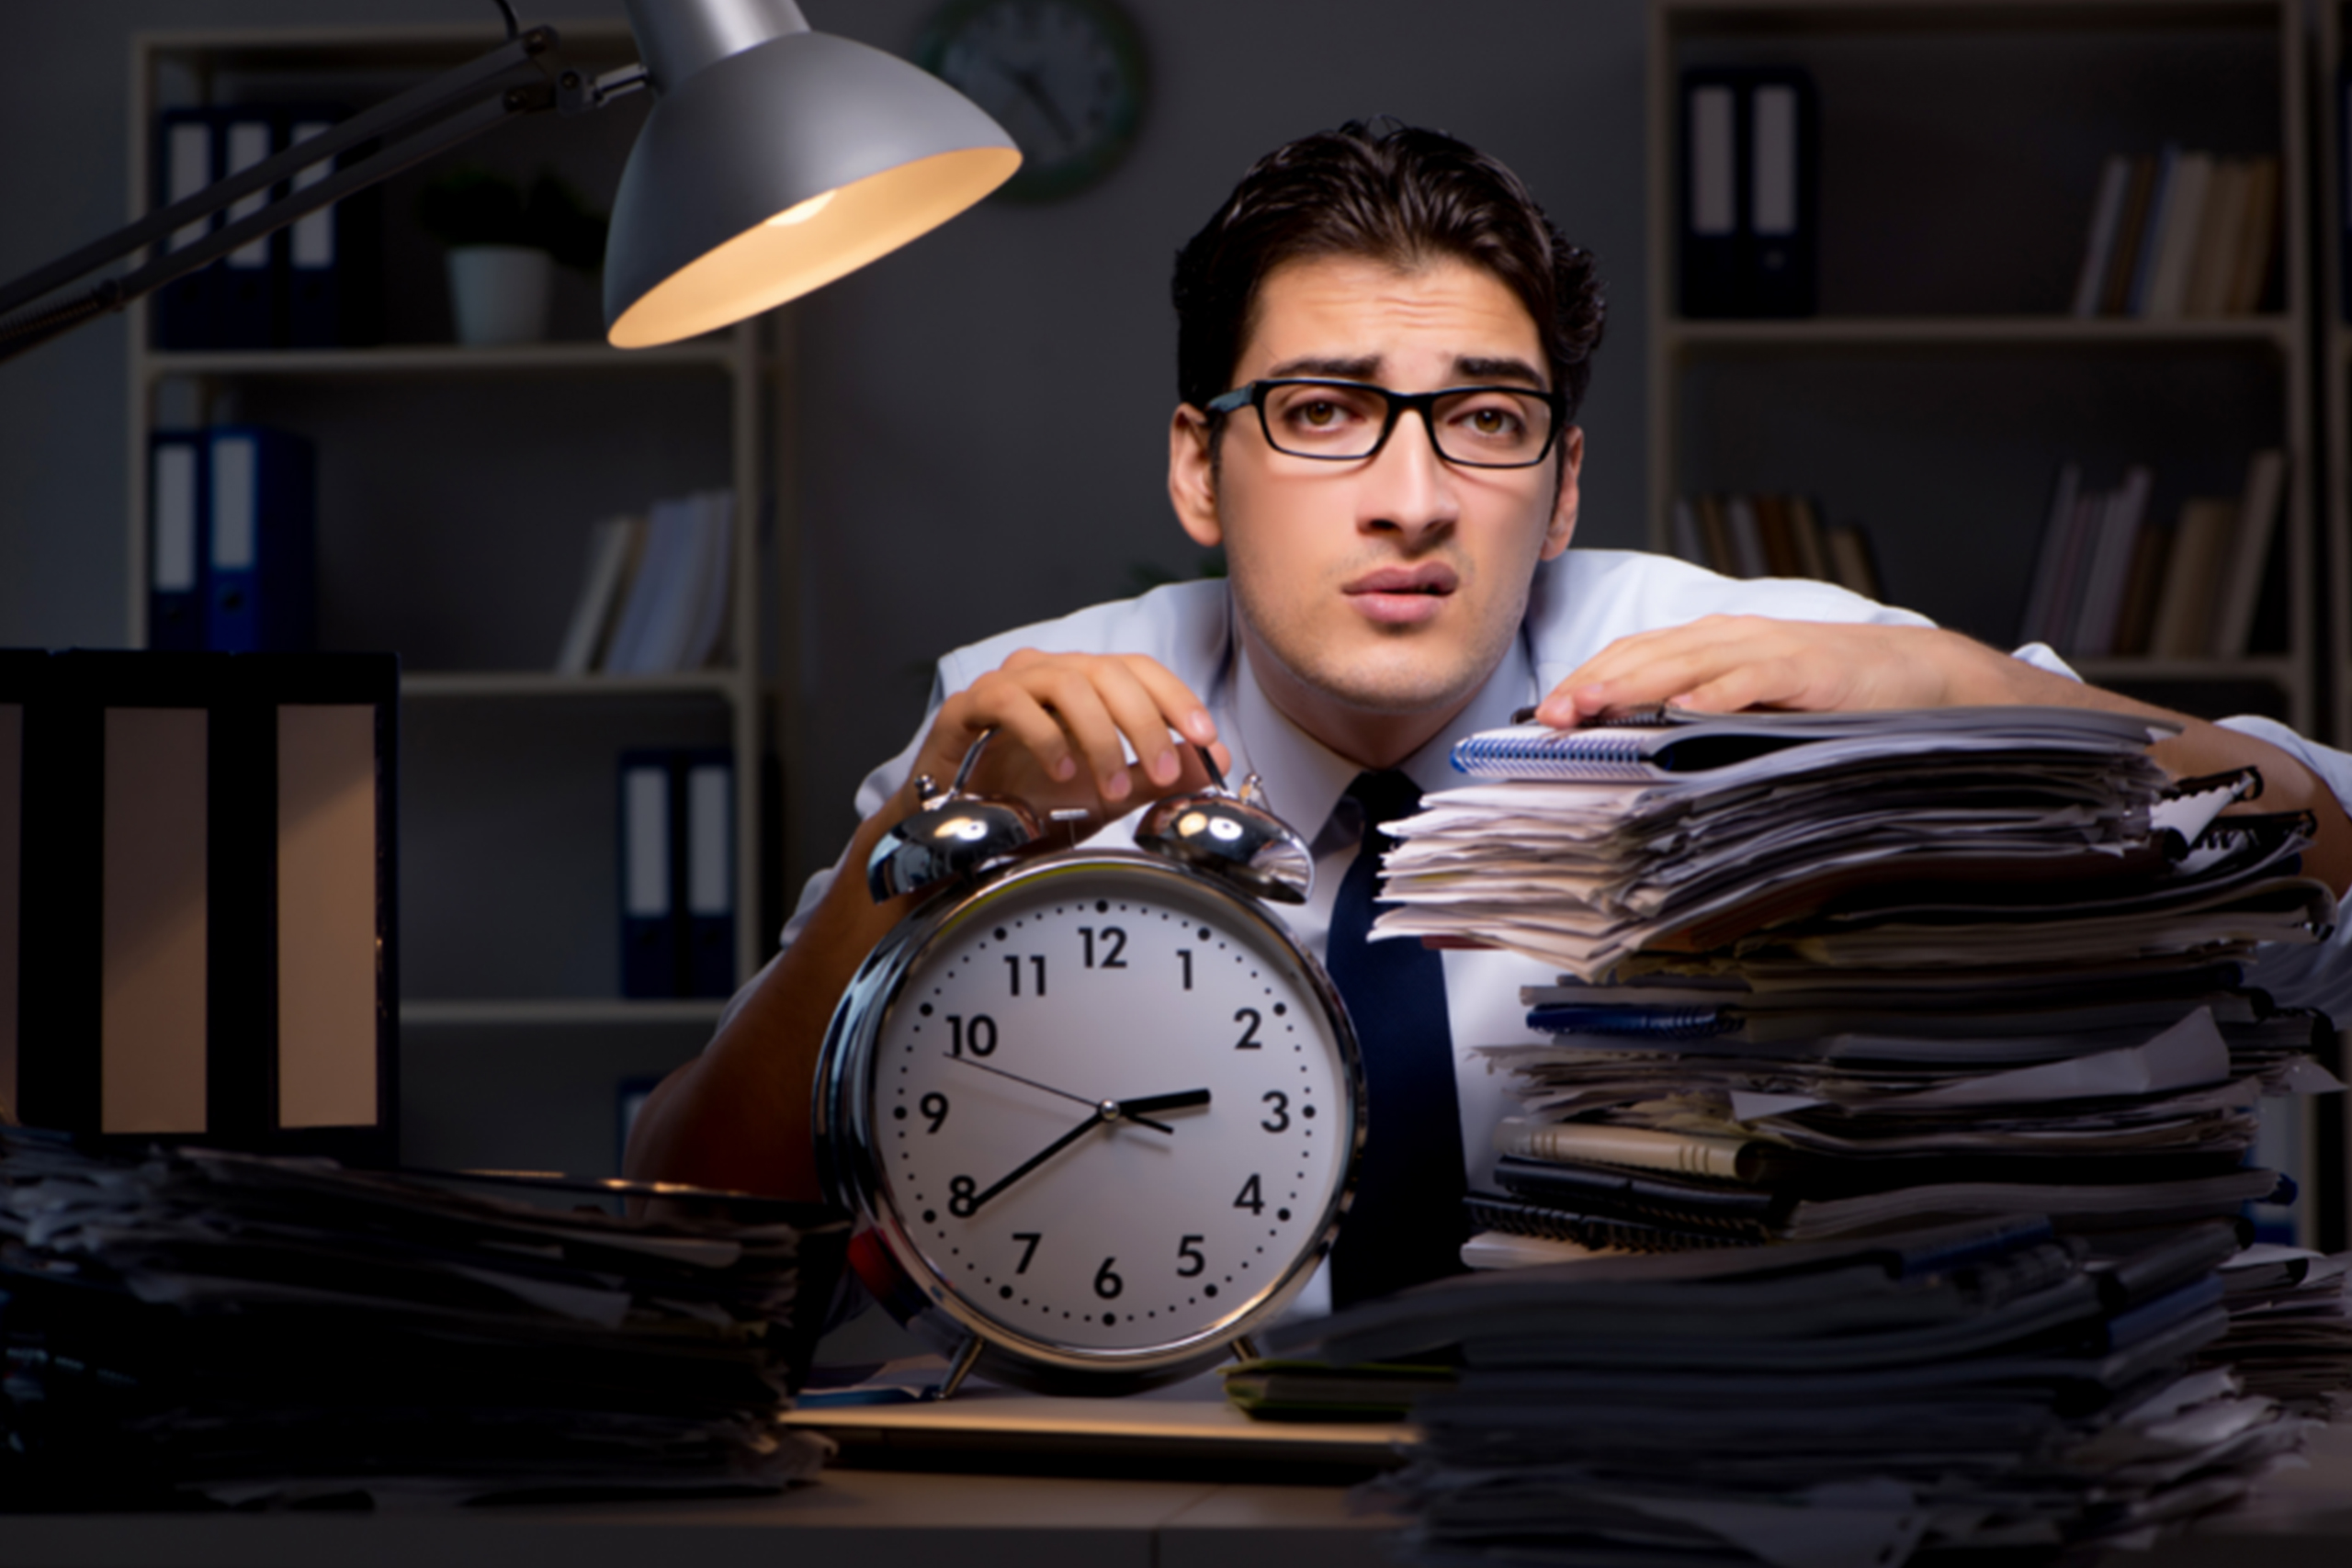 Office में Overtime करने वालों की जल्दी ख़राब होती है सेहत, जानें क्यों?